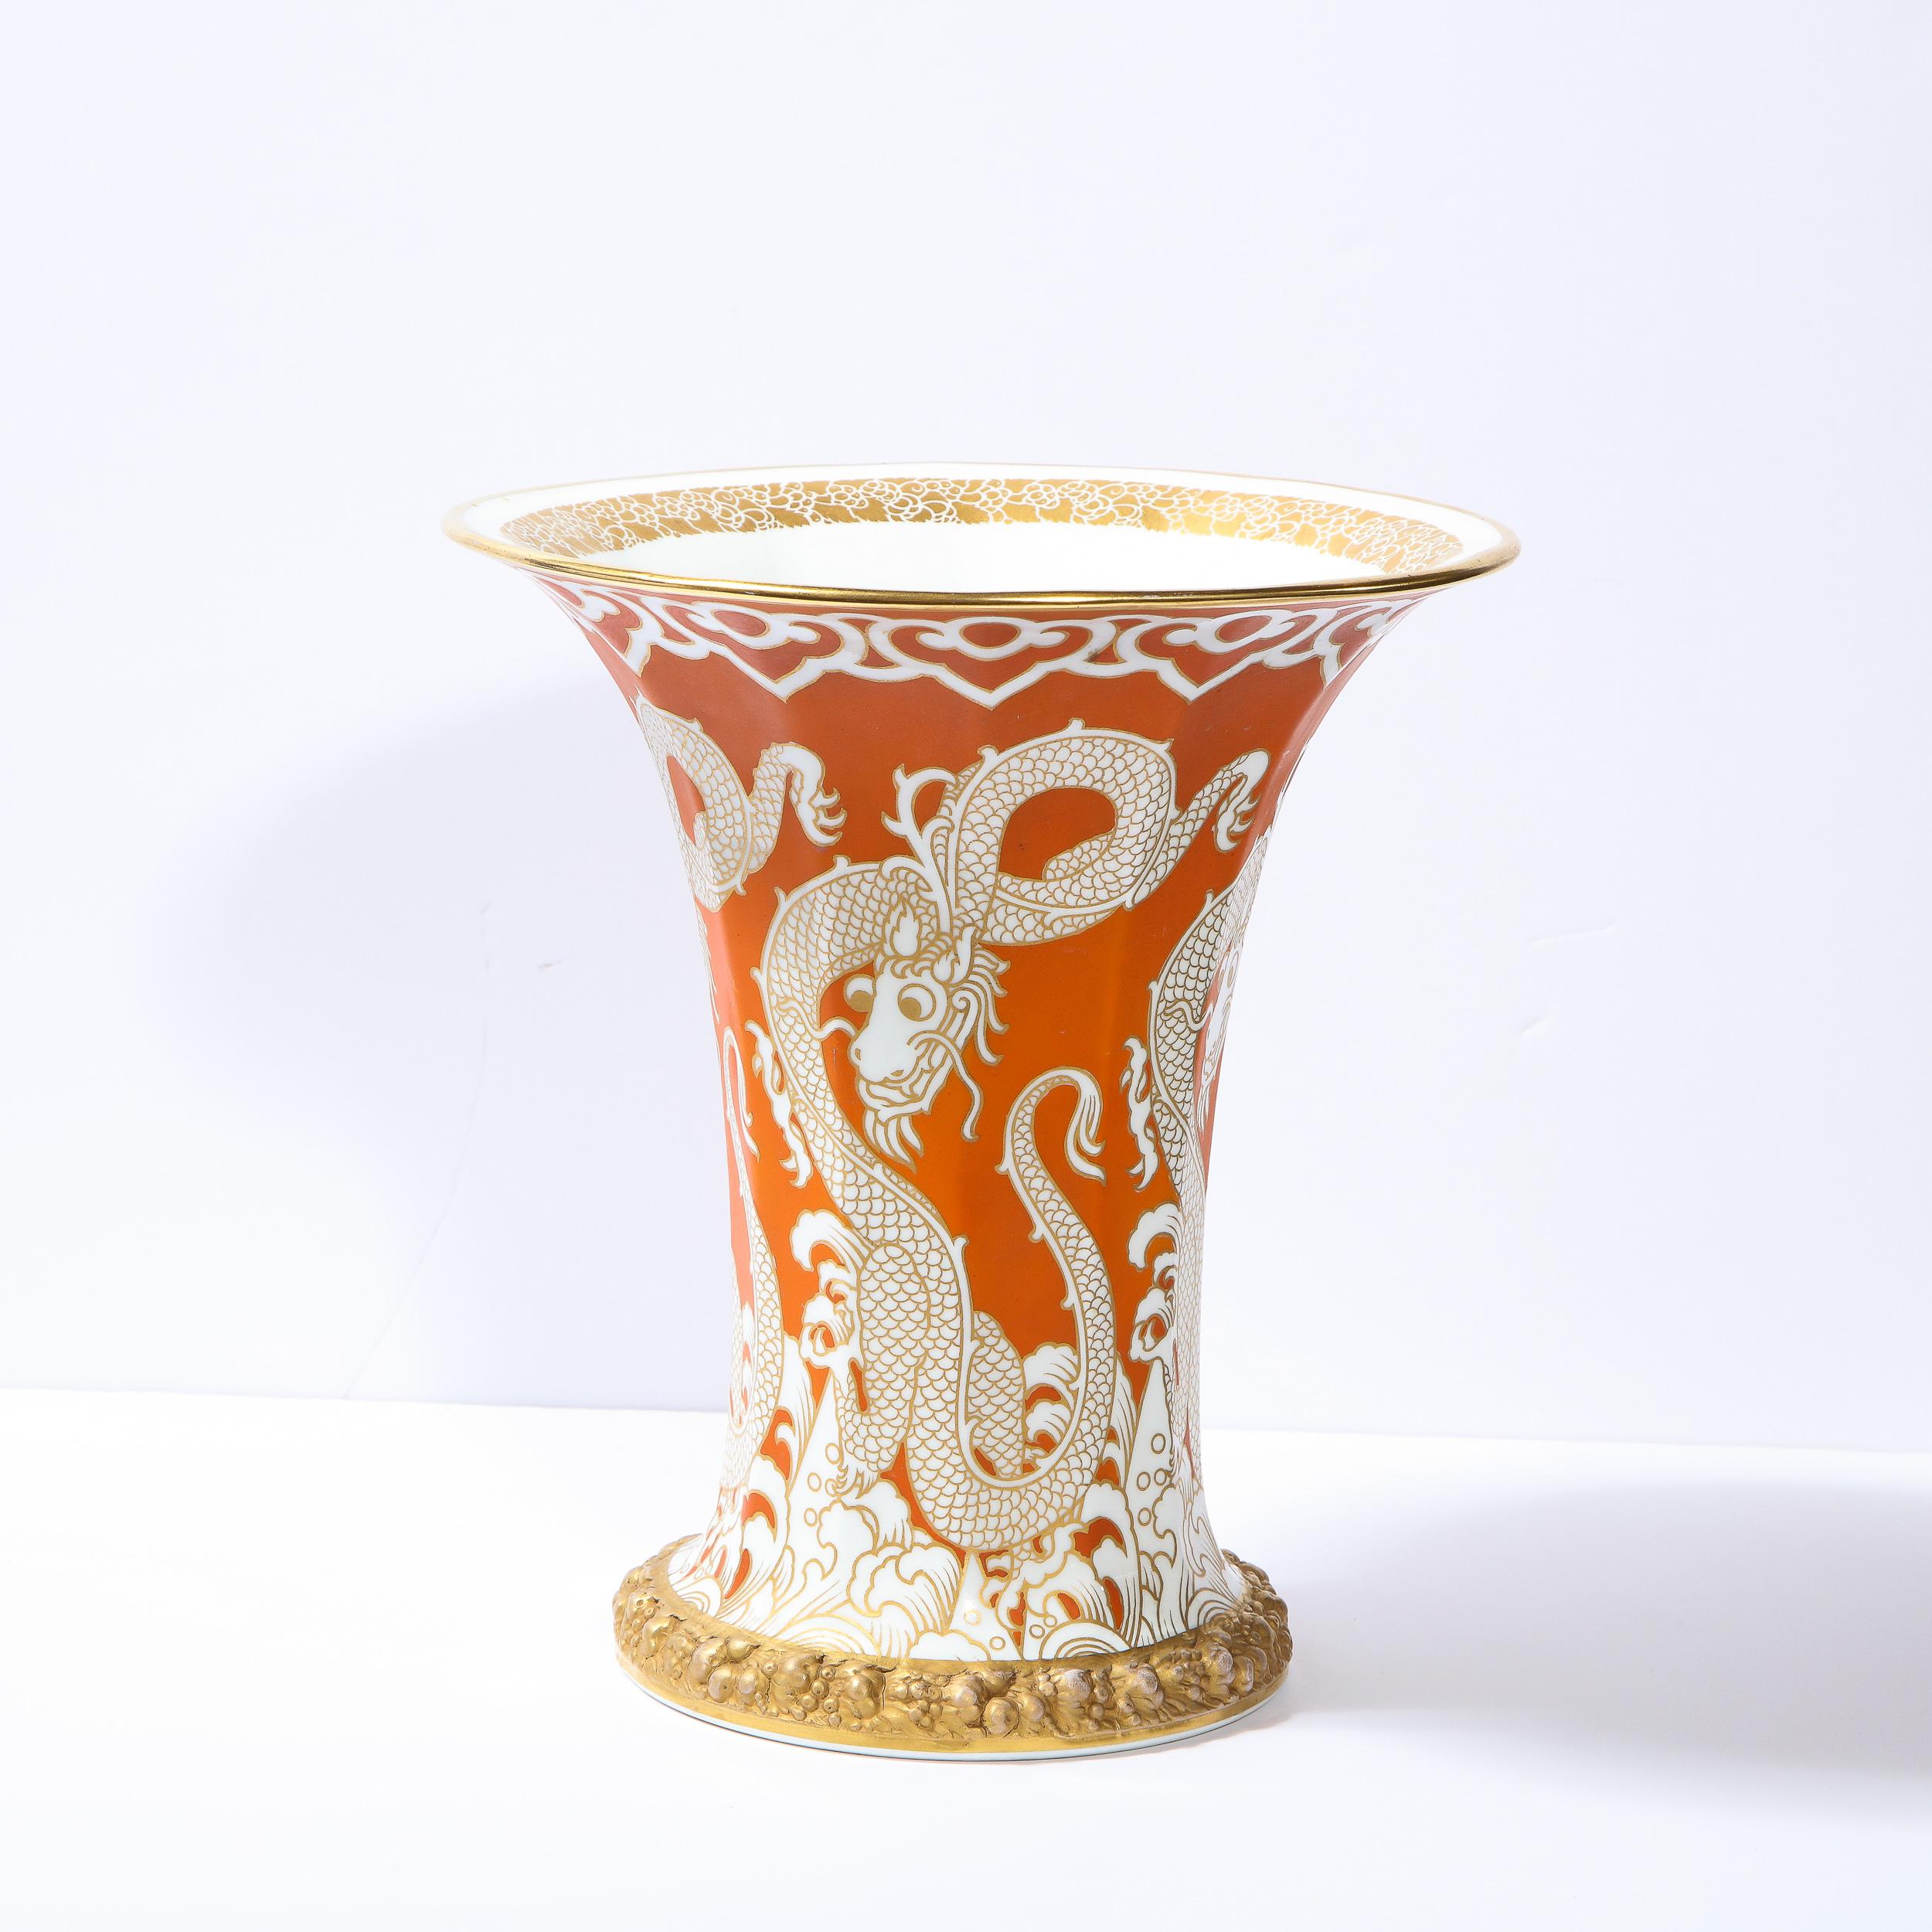 Diese atemberaubende modernistische Vase wurde in der zweiten Hälfte des 20. Jahrhunderts von dem angesehenen Hersteller Rosenthal realisiert. Sie hat einen runden Sockel mit vergoldeten:: stilisierten:: neoklassizistischen:: reliefartigen